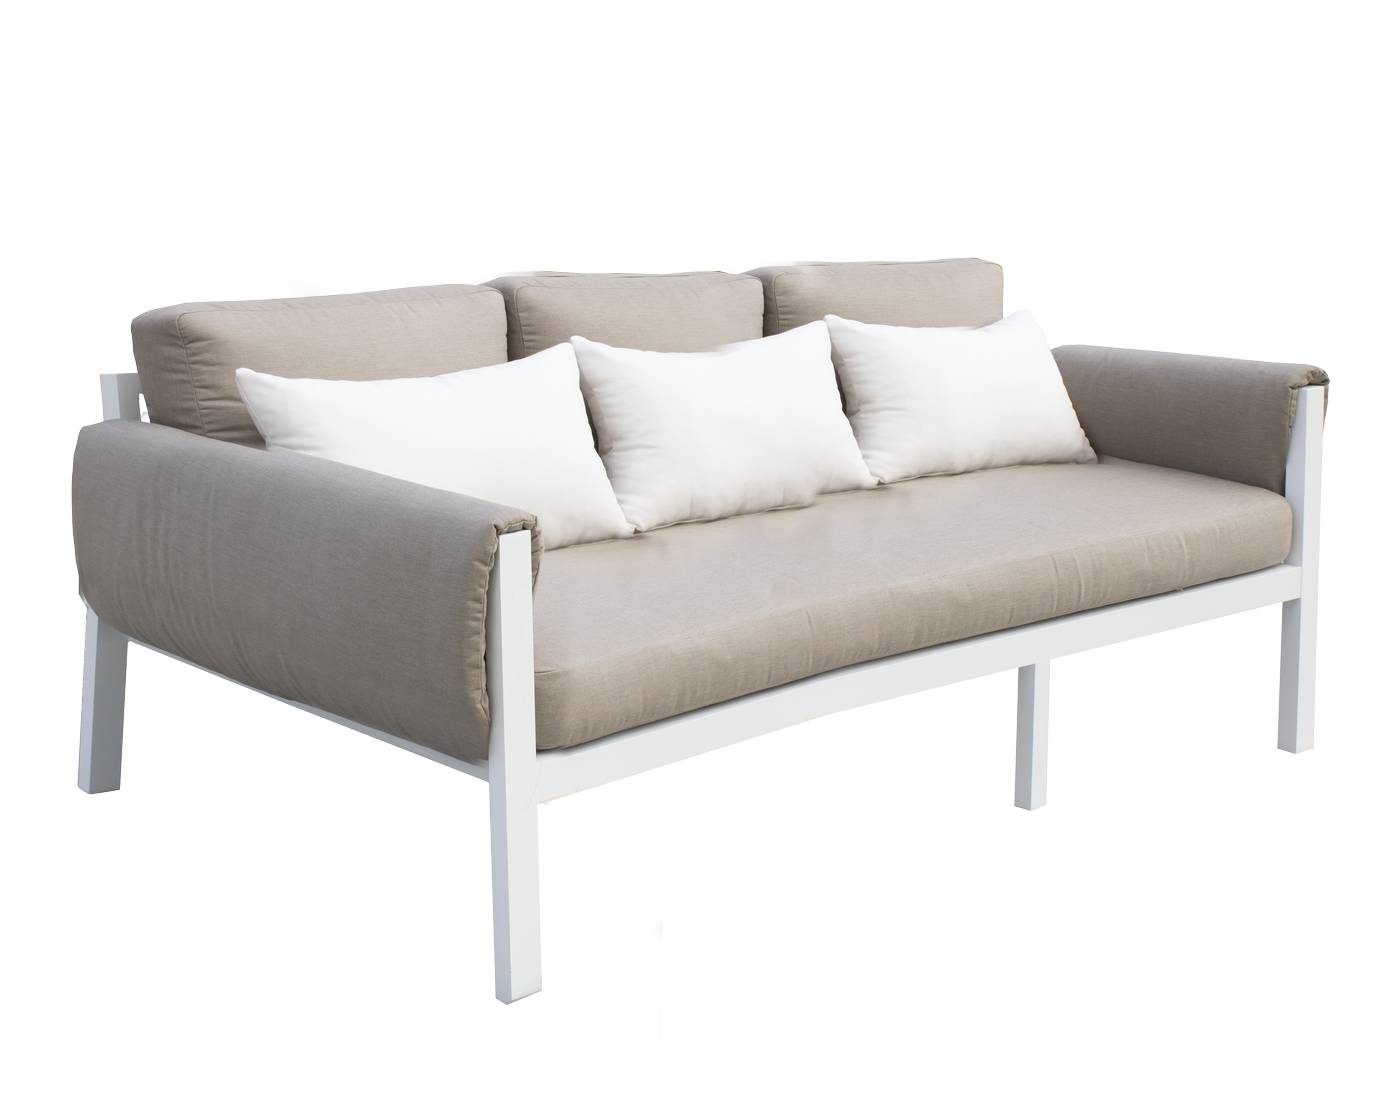 Set Arizona-88 - Conjunto aluminio con opción de cojines en los brazos: sofá de 3 plazas + 2 sillones + 1 mesa de centro. En color: blanco, antracita, marrón, champagne o plata.